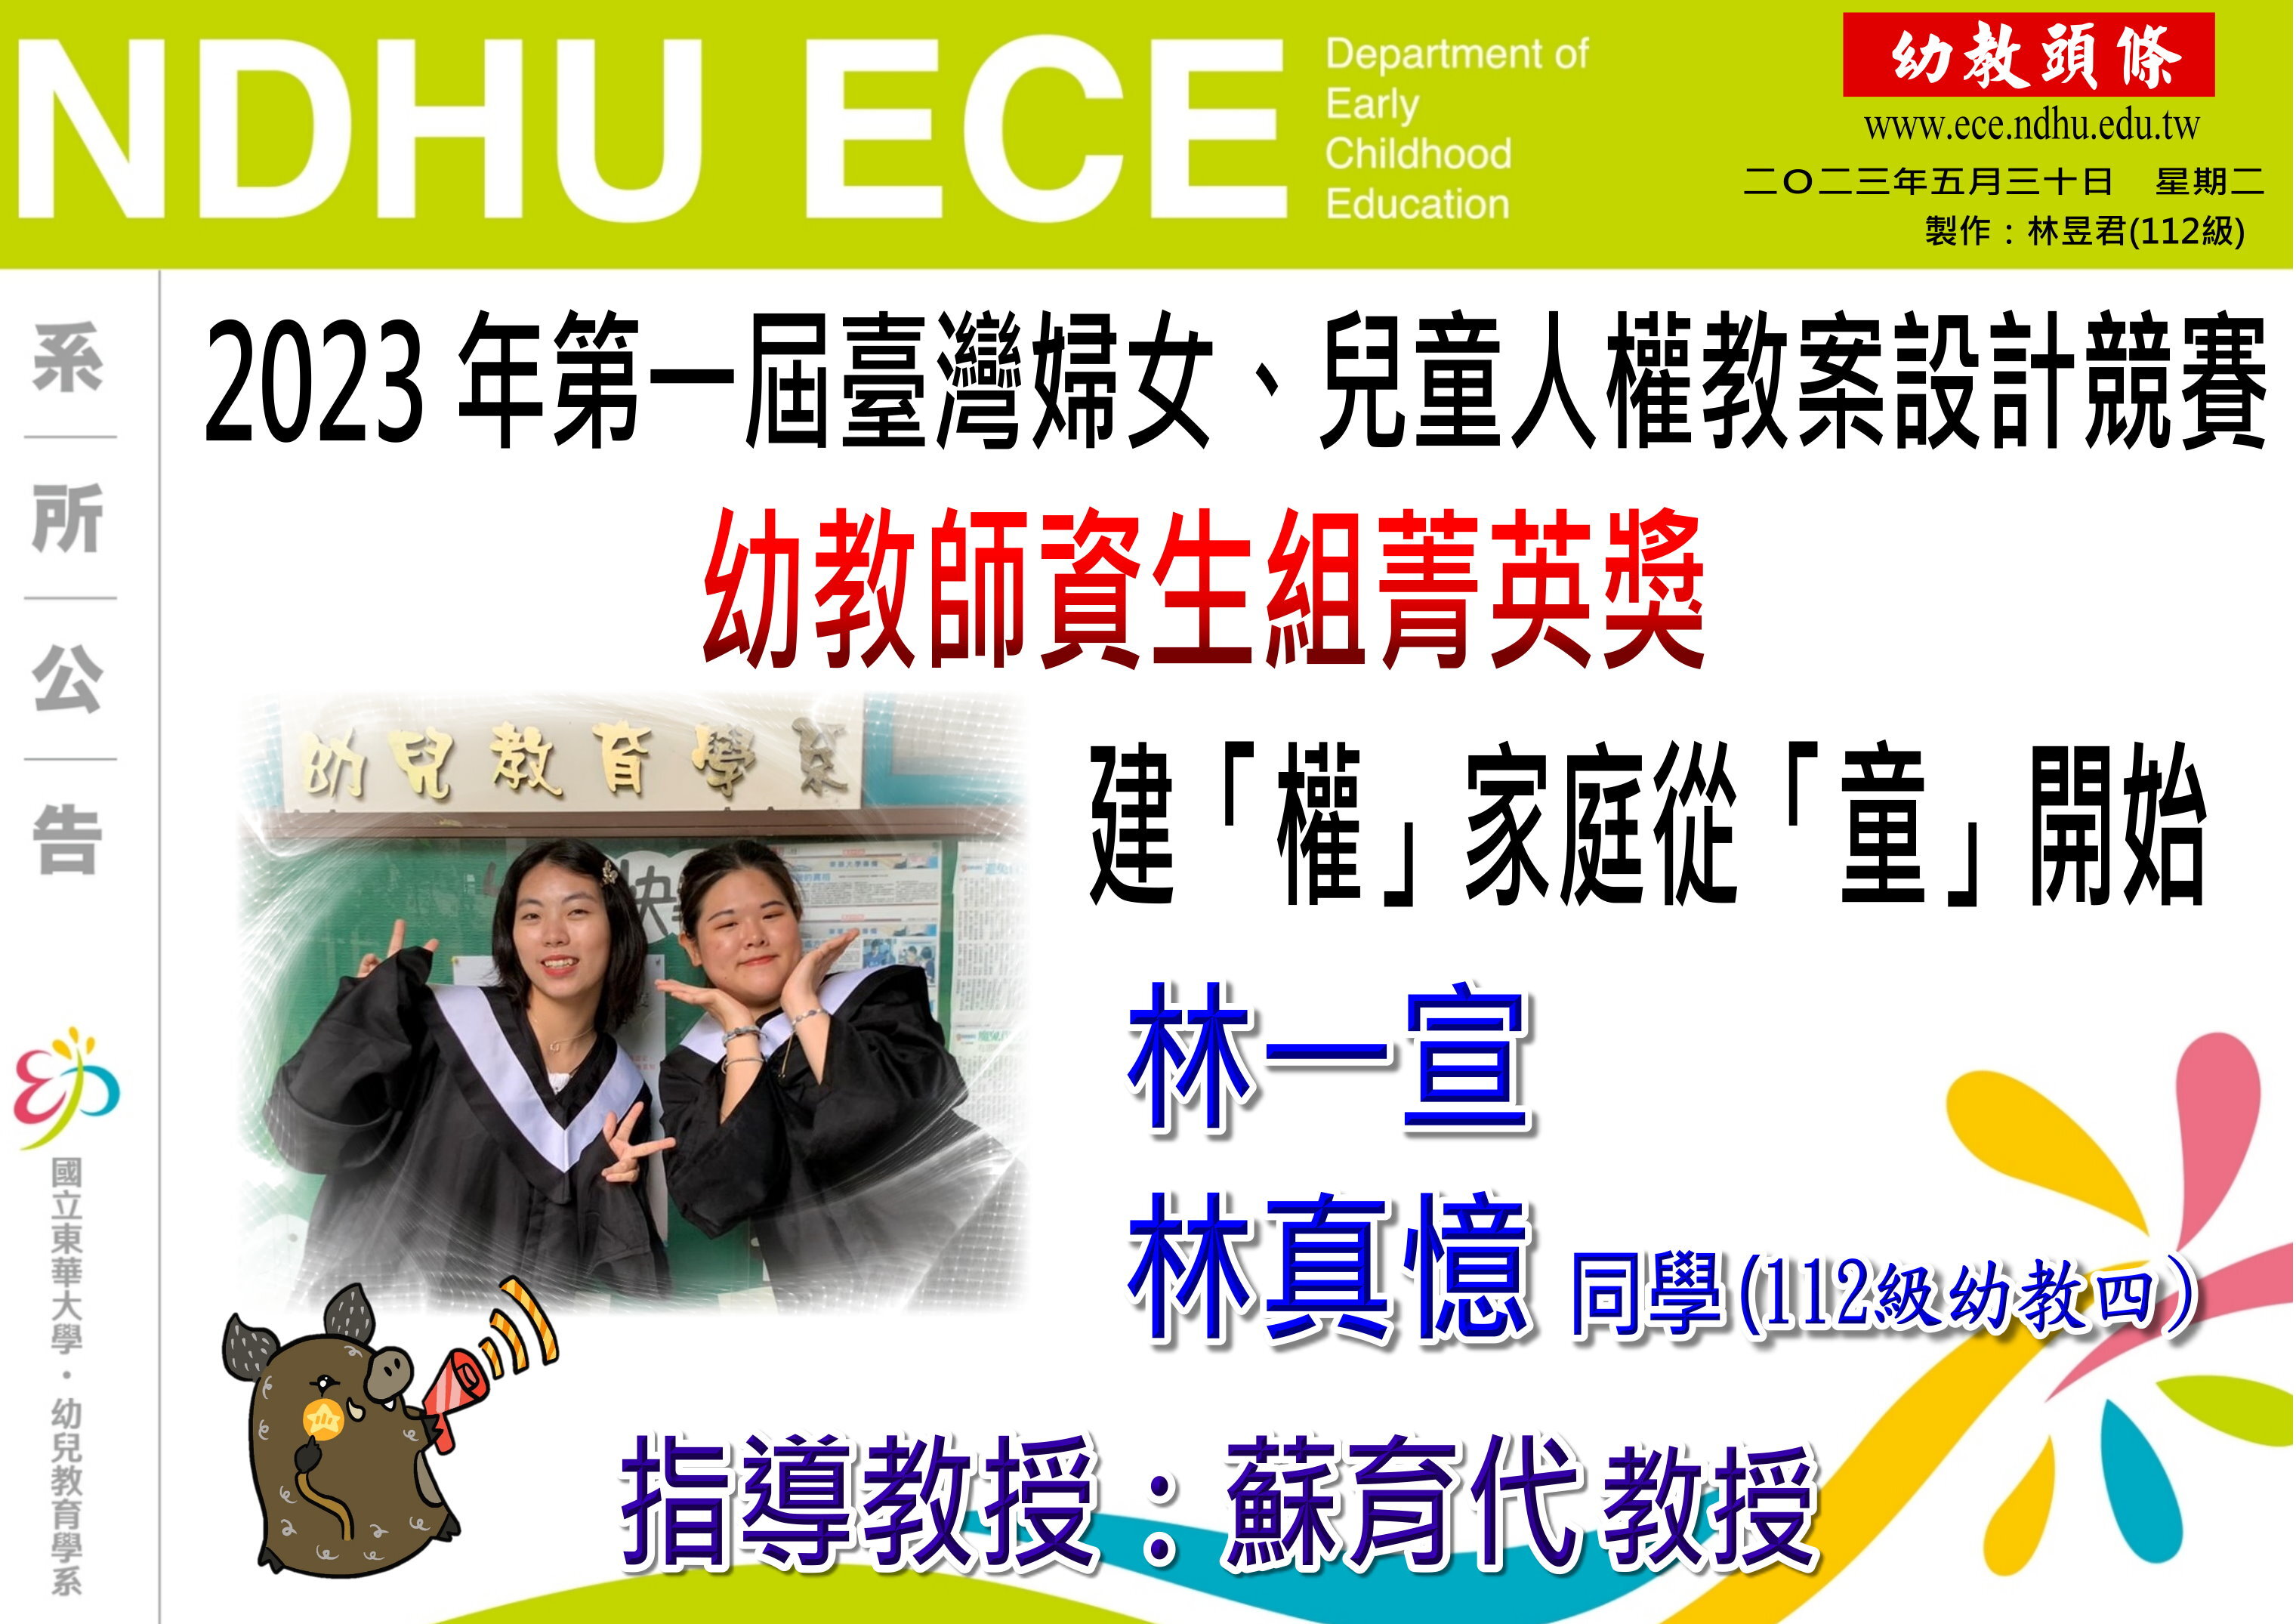 【恭賀】2023年台灣婦女、兒童人權教案設計競賽獲獎(林一宣、林真憶)(另開新視窗)